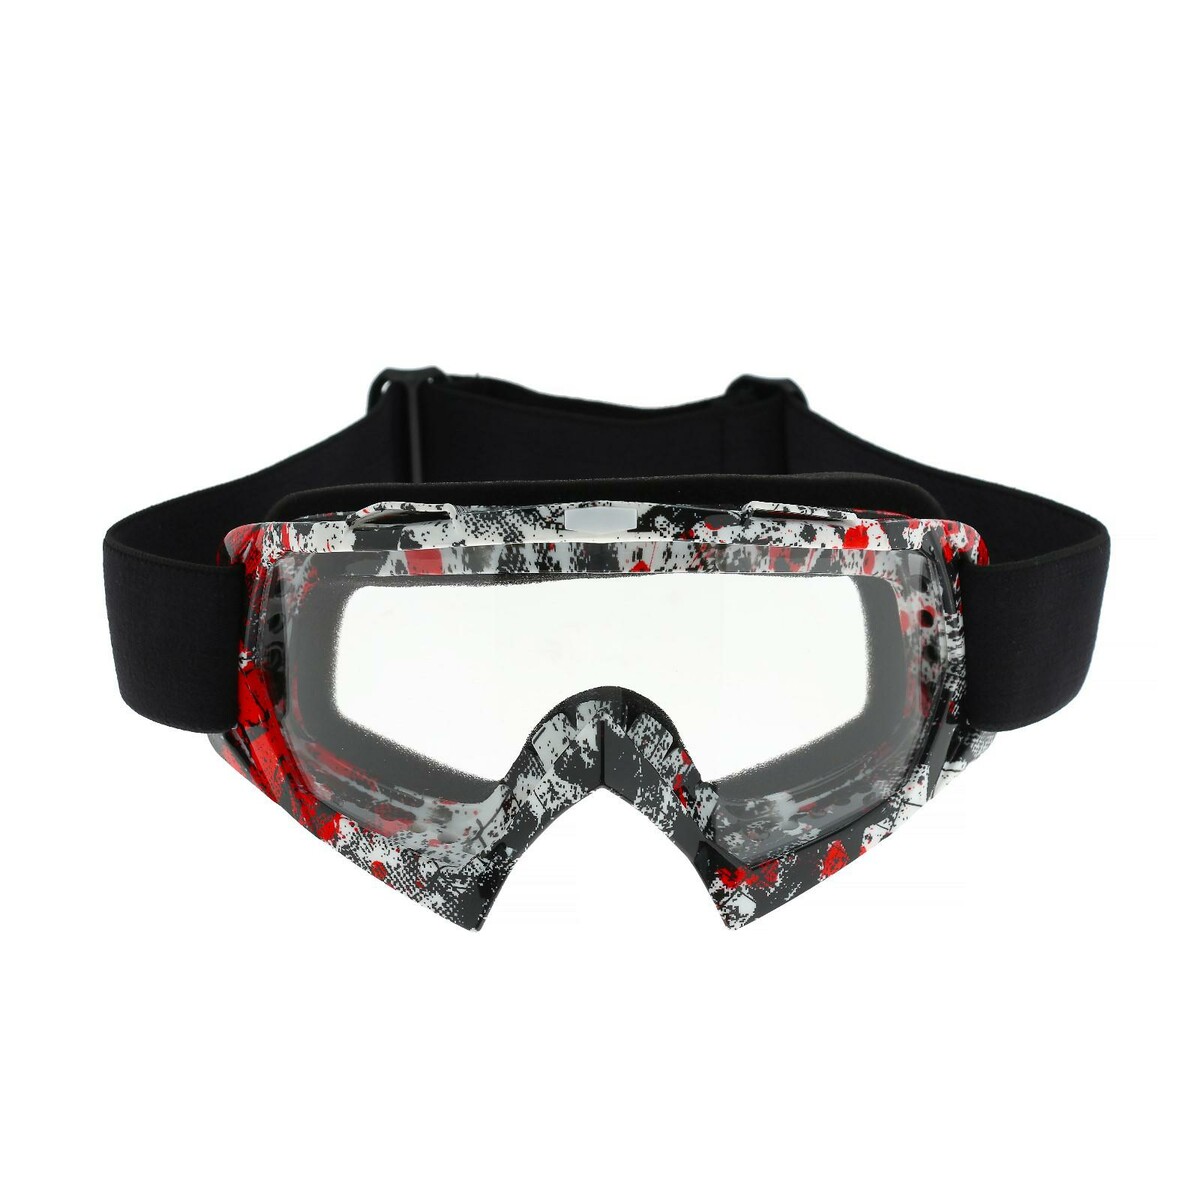 Очки-маска для езды на мототехнике, стекло прозрачное, цвет красный-черный, ом-21 очки маска со съемной защитой носа стекло прозрачное черные